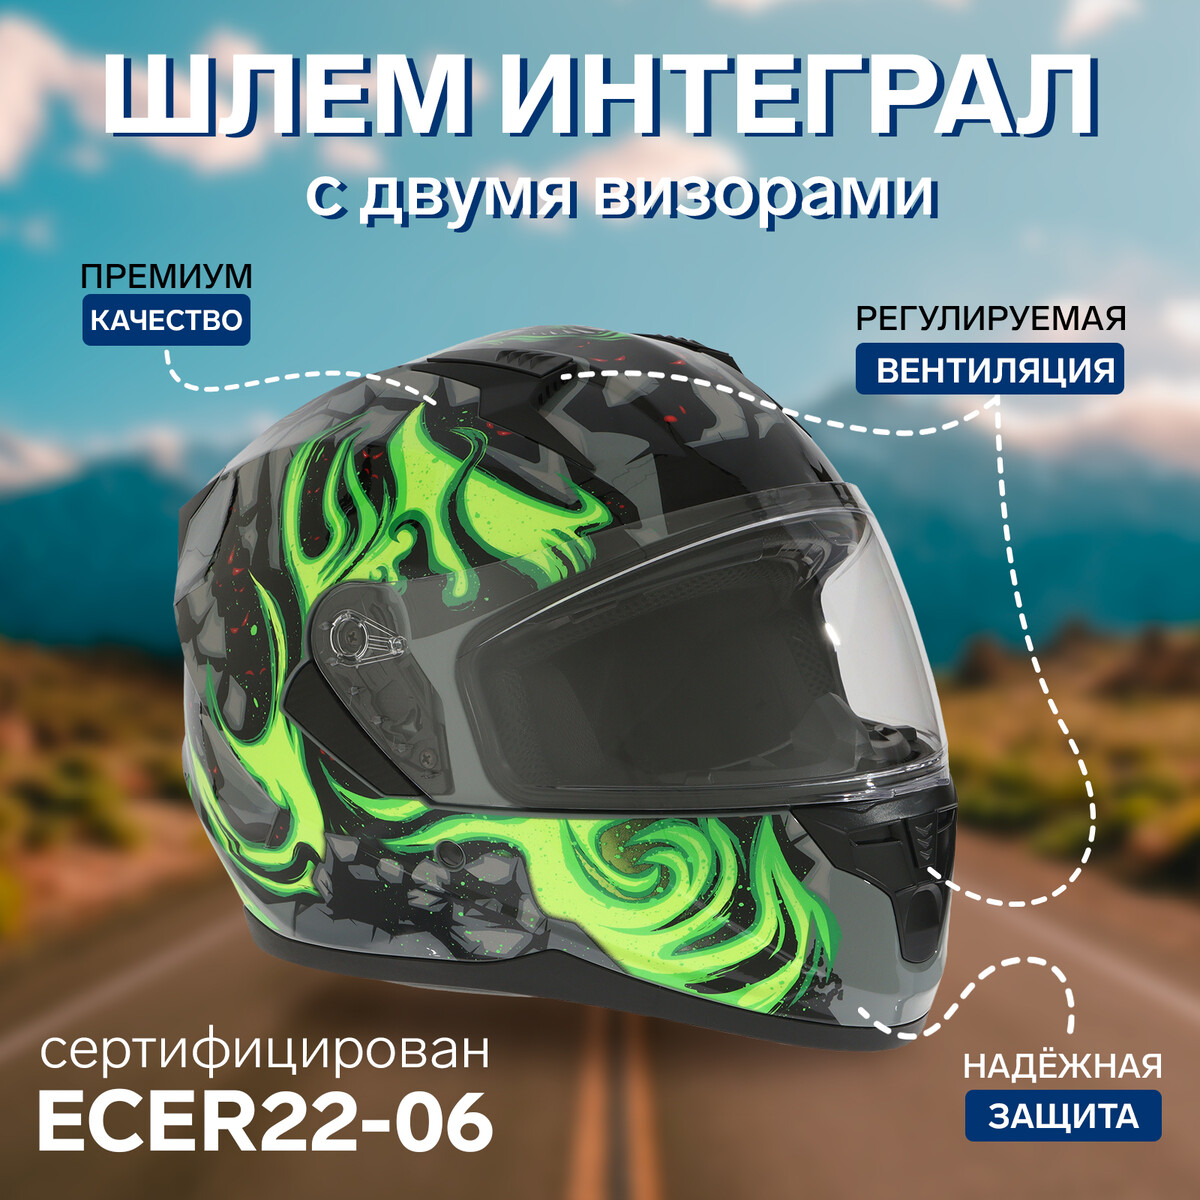 Шлем интеграл с двумя визорами, размер m (57-58), модель bld-m67e, черно-зеленый всуперечь потоку